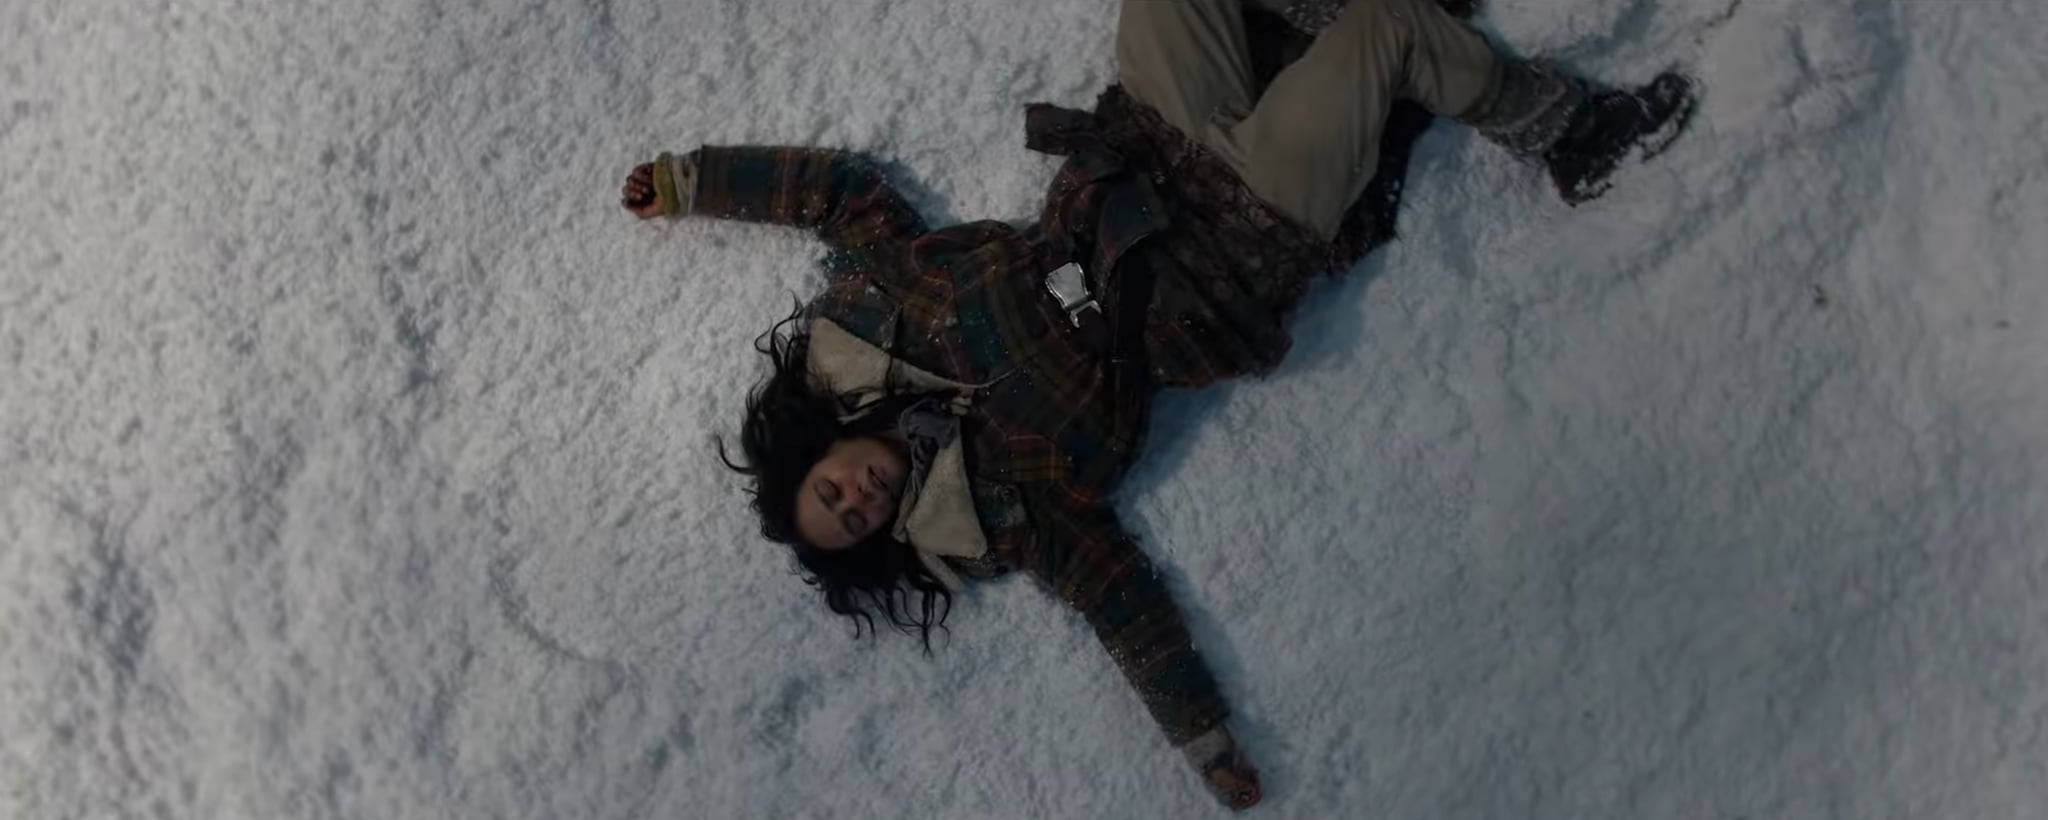 雄蜂第2季,一个女孩在雪地里昏倒了